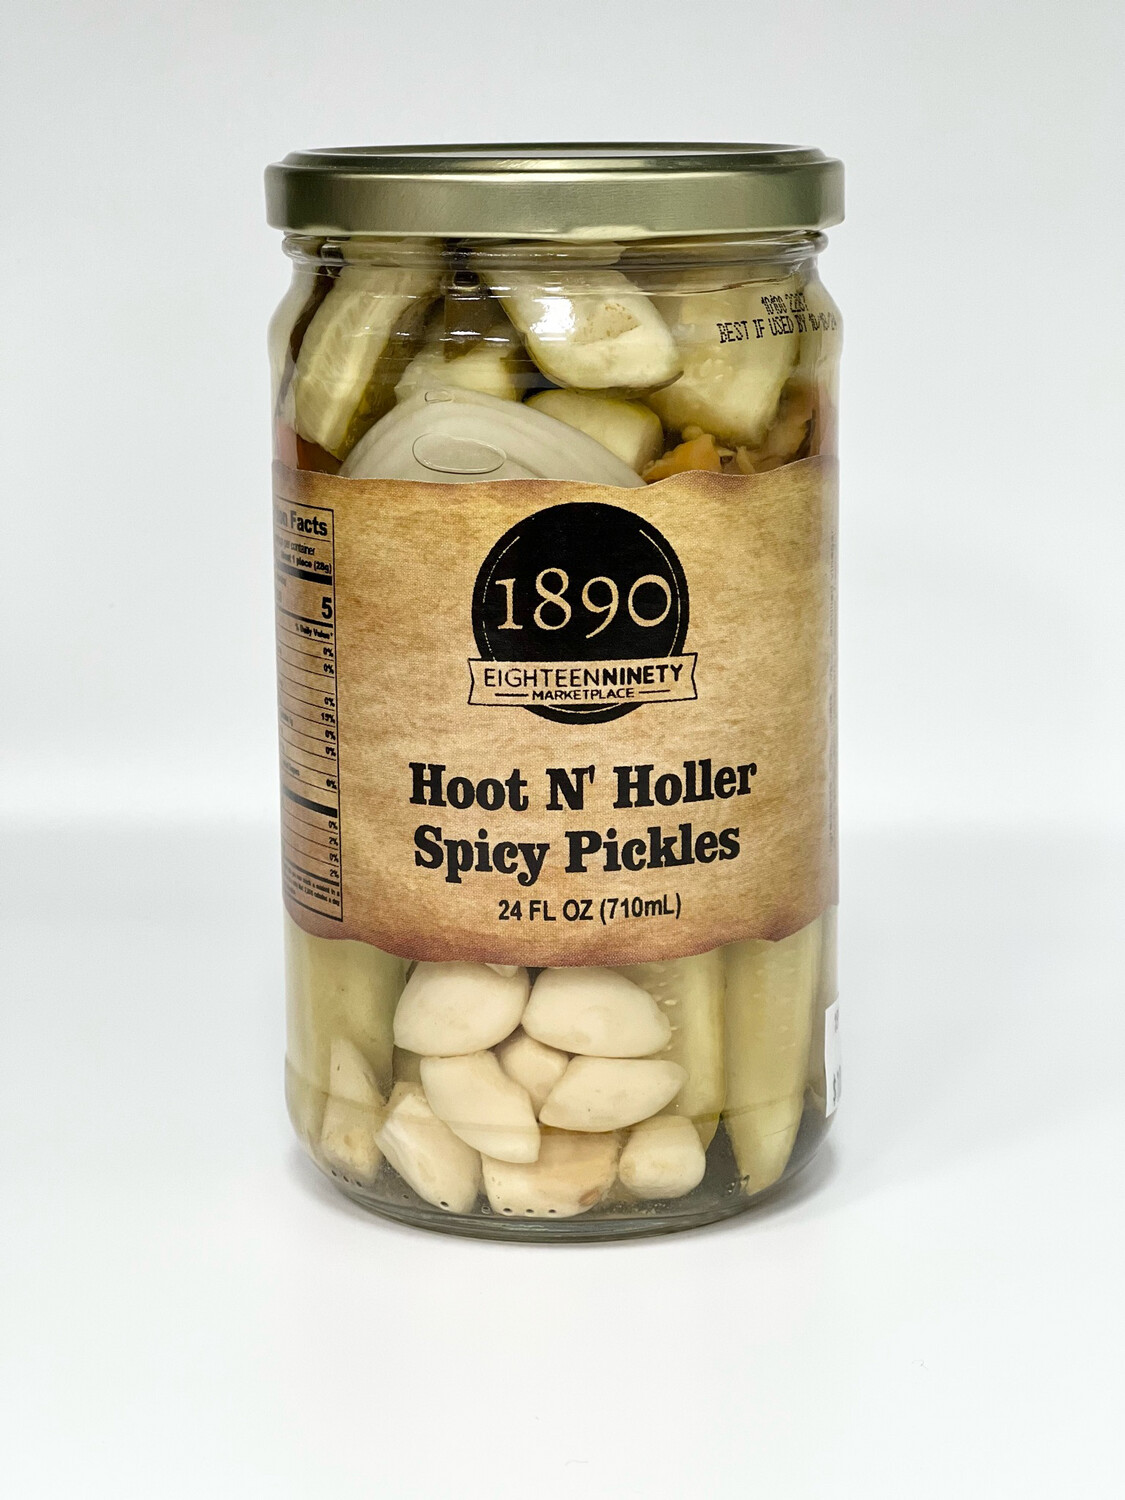 Hoot N' Holler Spicy Pickles